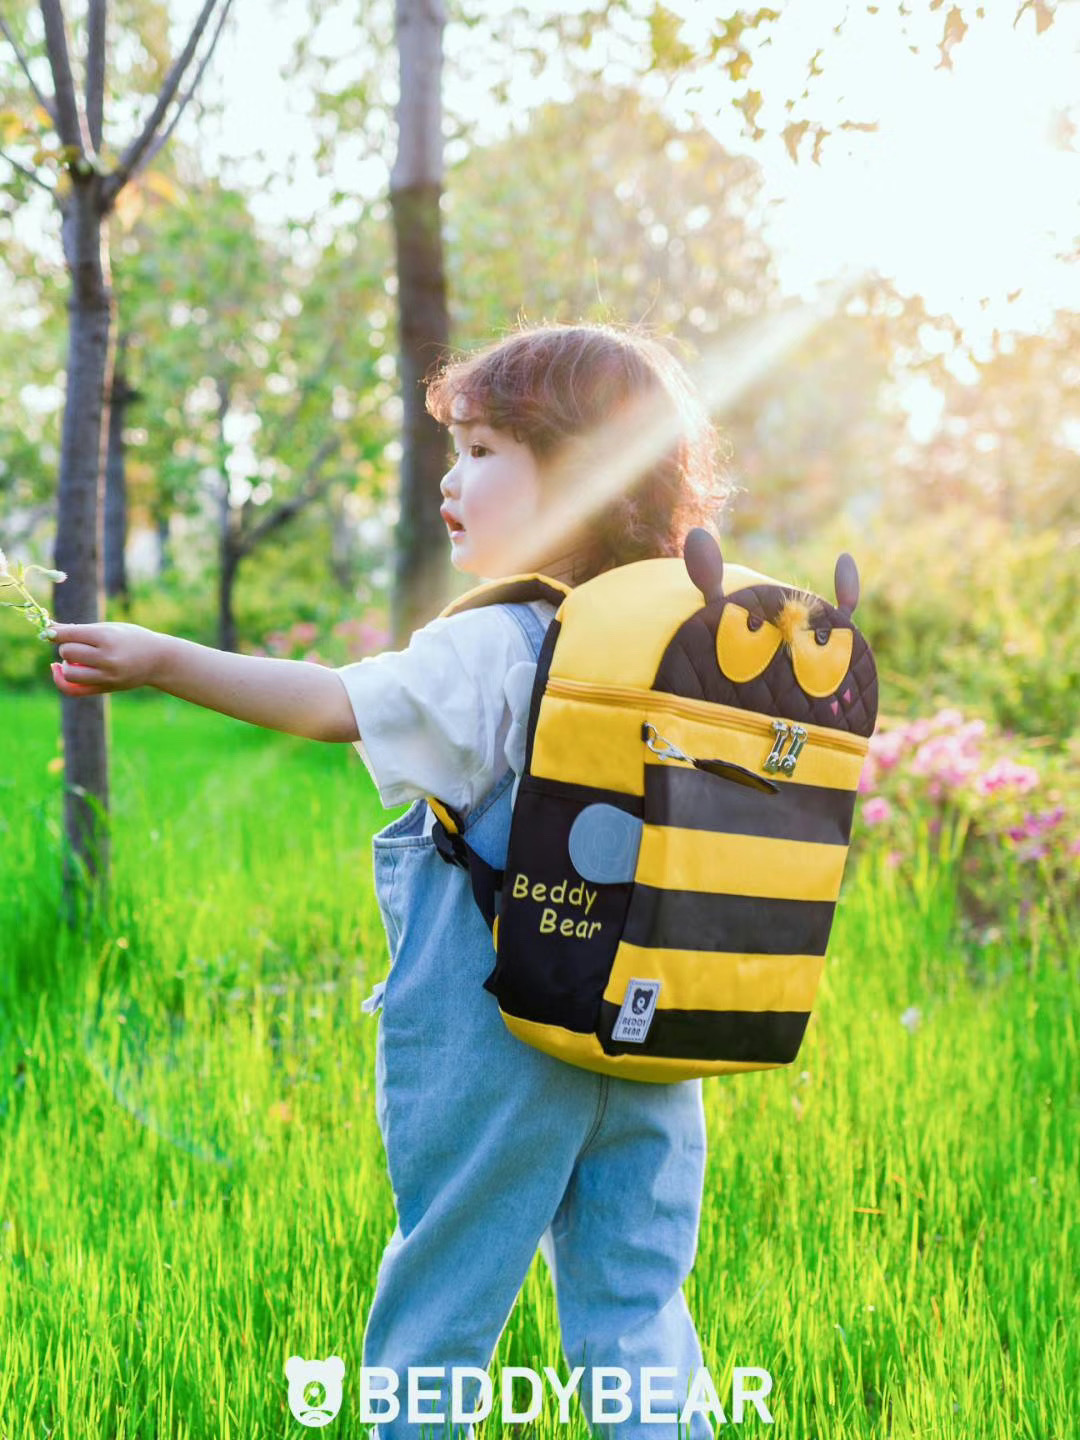 Balo Cho Bé 4 tuổi Beddybear dòng Cute Bag dành cho Bé Học Mầm non Mẫu giáo - họa tiết Ong Vàng Chống gù lưng - sản phẩm chính hãng bảo hành 2 năm